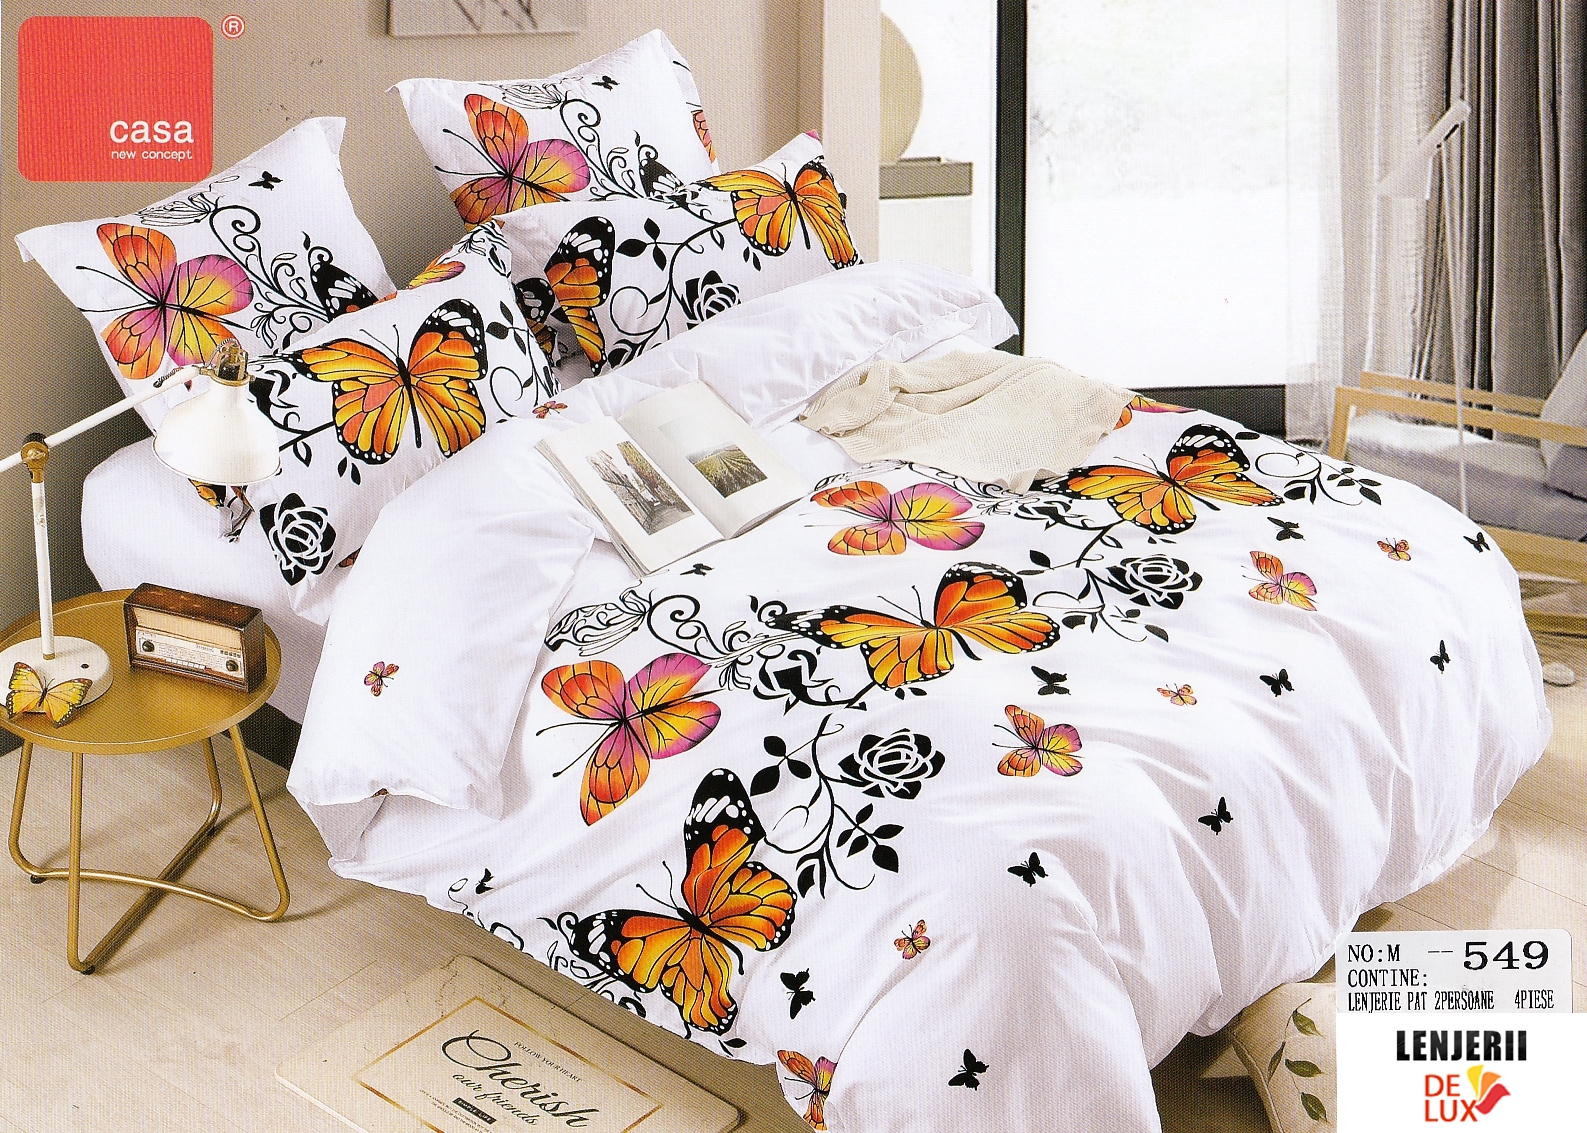 notification Cucumber pork Lenjerie de pat alba cu fluturi multicolori din bumbac satinat Casa New  Fashion formata din 4 piese | Lenjerii-DeLux.ro